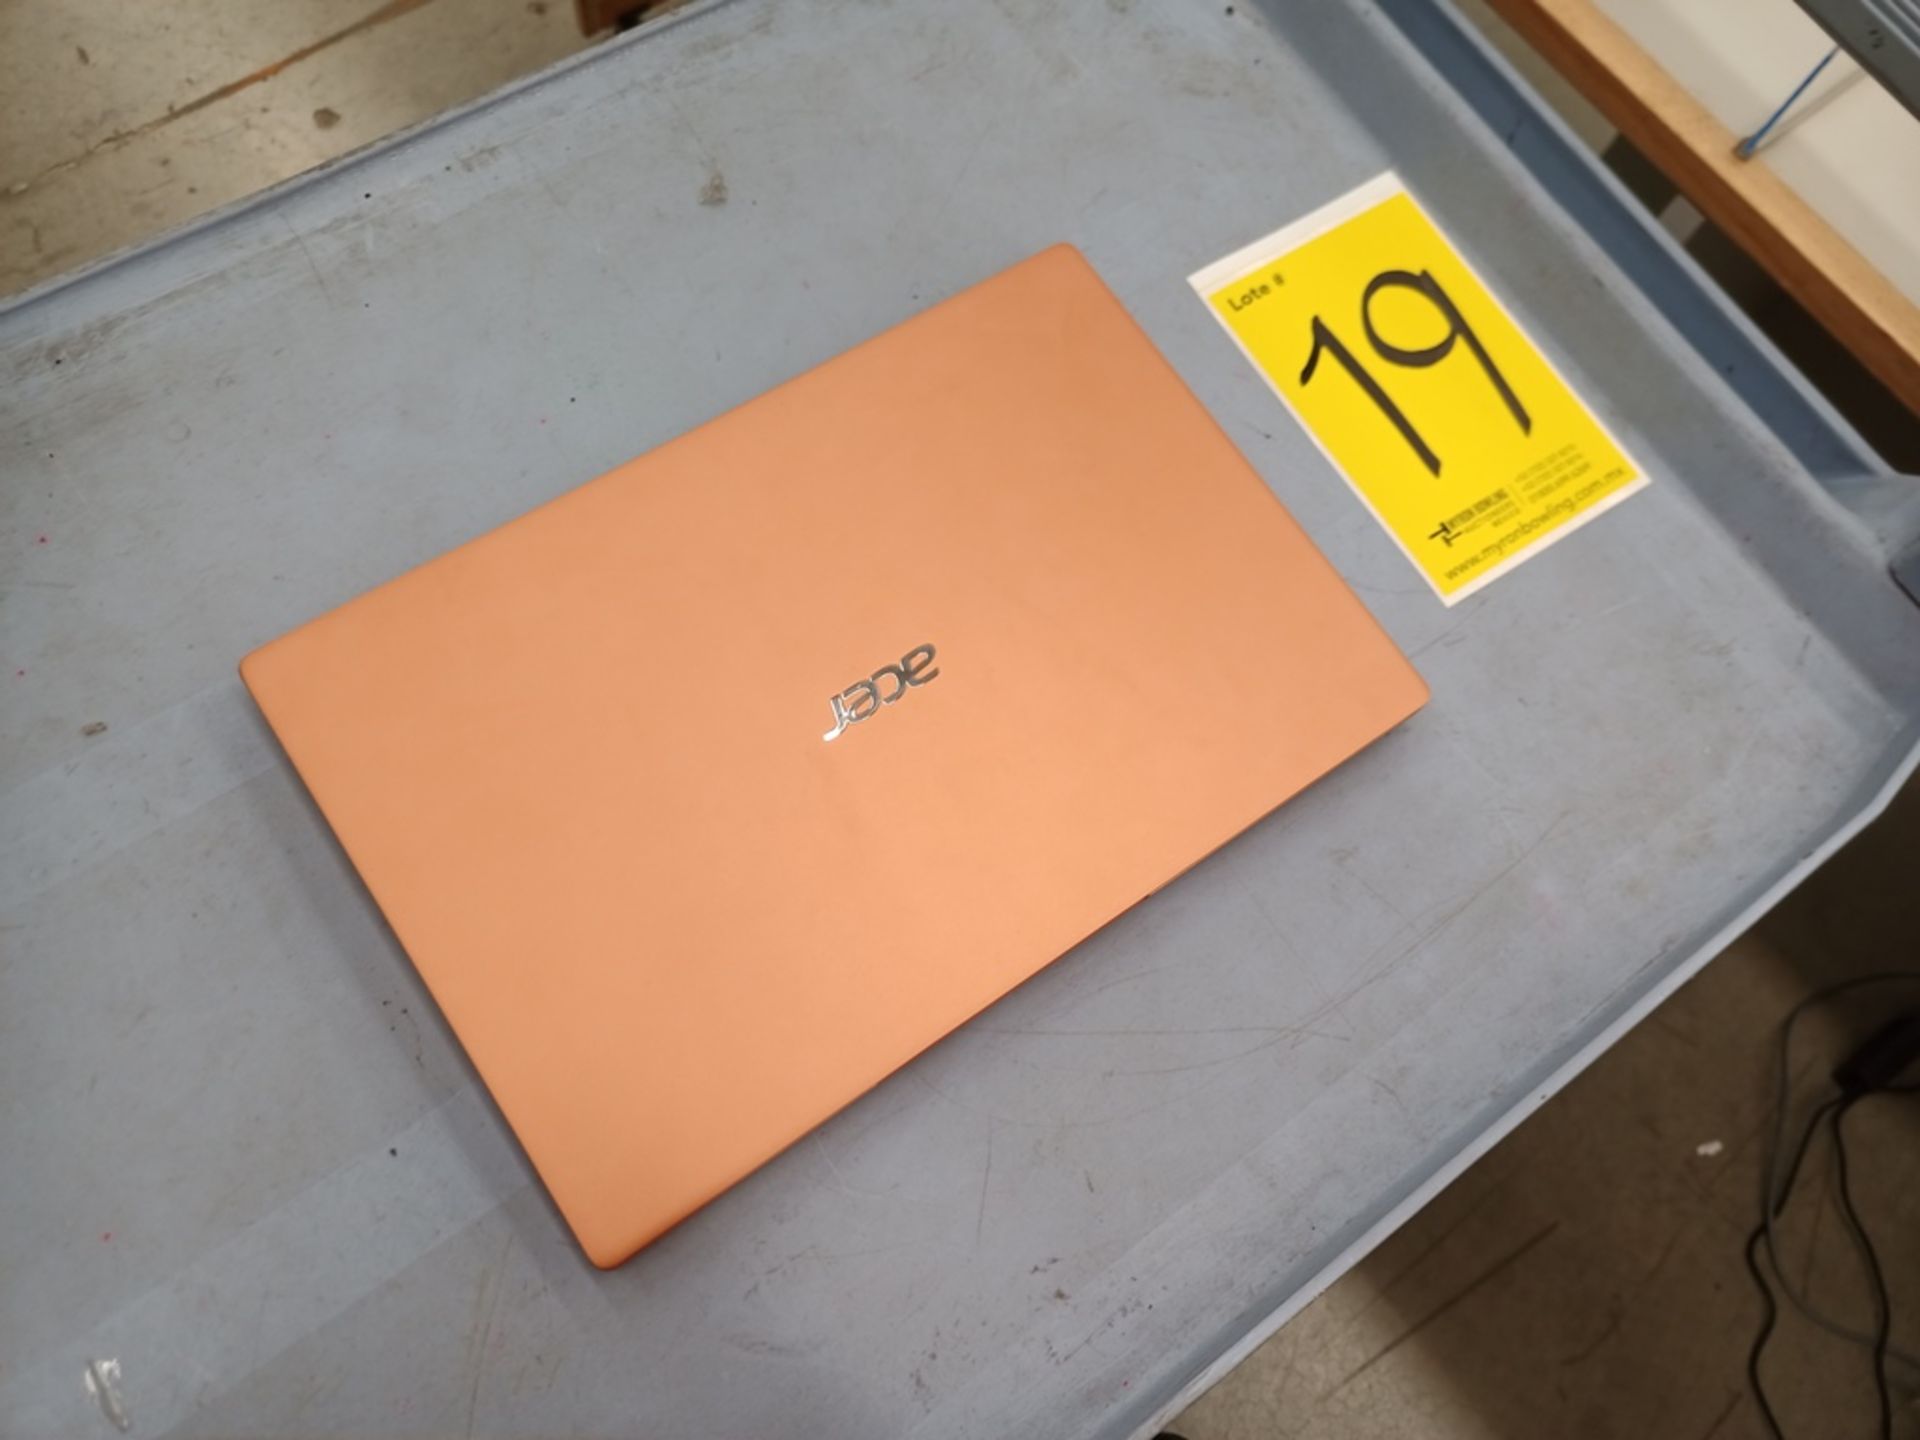 1 Computadora tipo laptop Marca ACER, Modelo SF314595959, Serie NXA0RAL001115100303400, Color Melon - Image 18 of 21